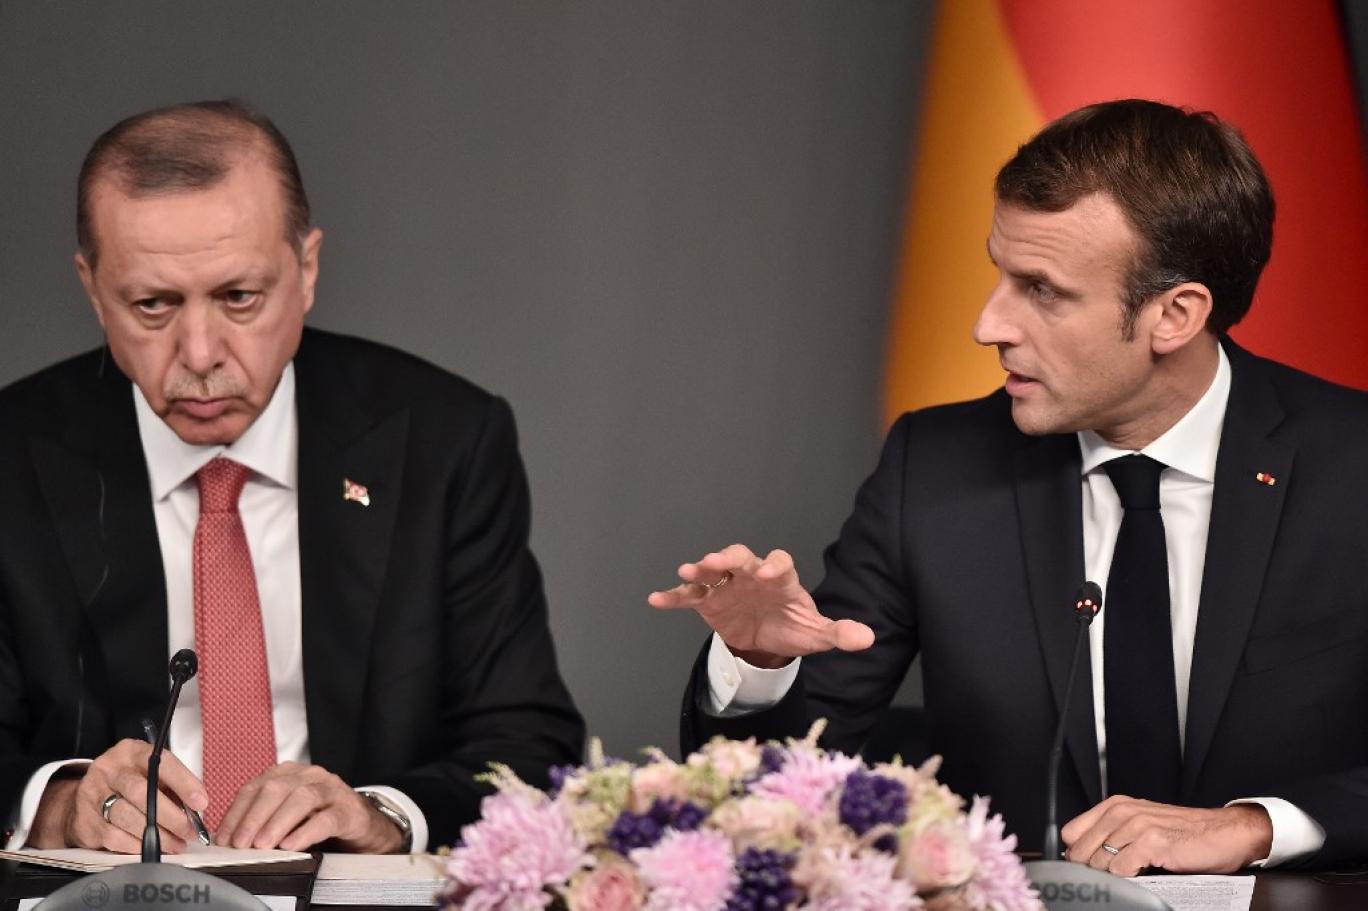 باريس تعلن عن اجتماع لوزراء خارجية الاتحاد الأوروبي حول تركيا